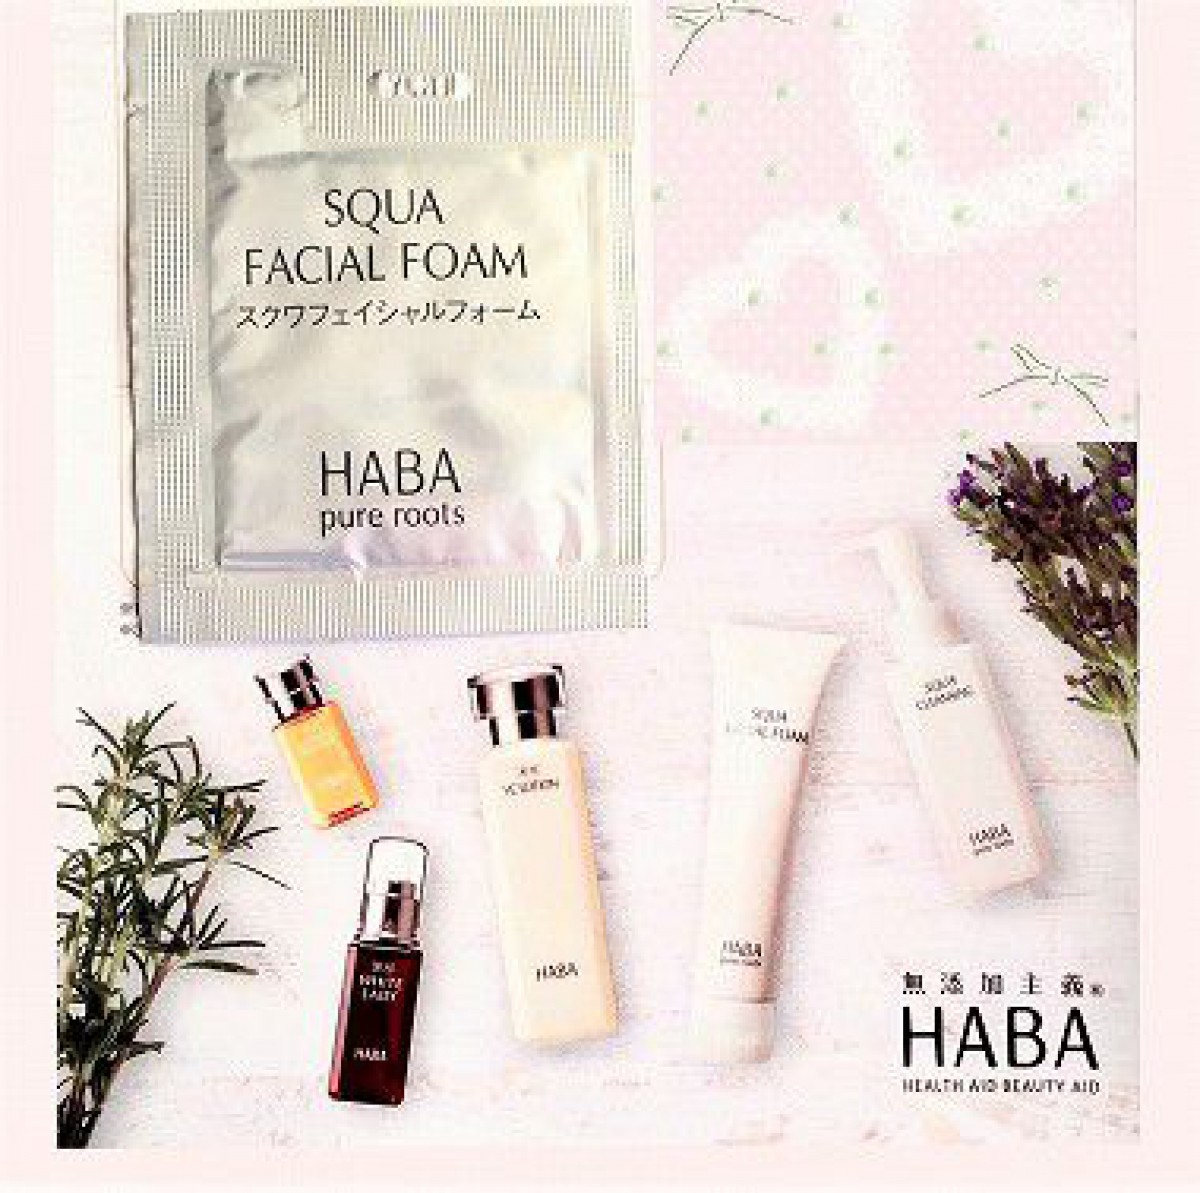 HABA（ハーバー）の洗顔フォーム「スクワフェイシャルフォーム」は泡がすごいです